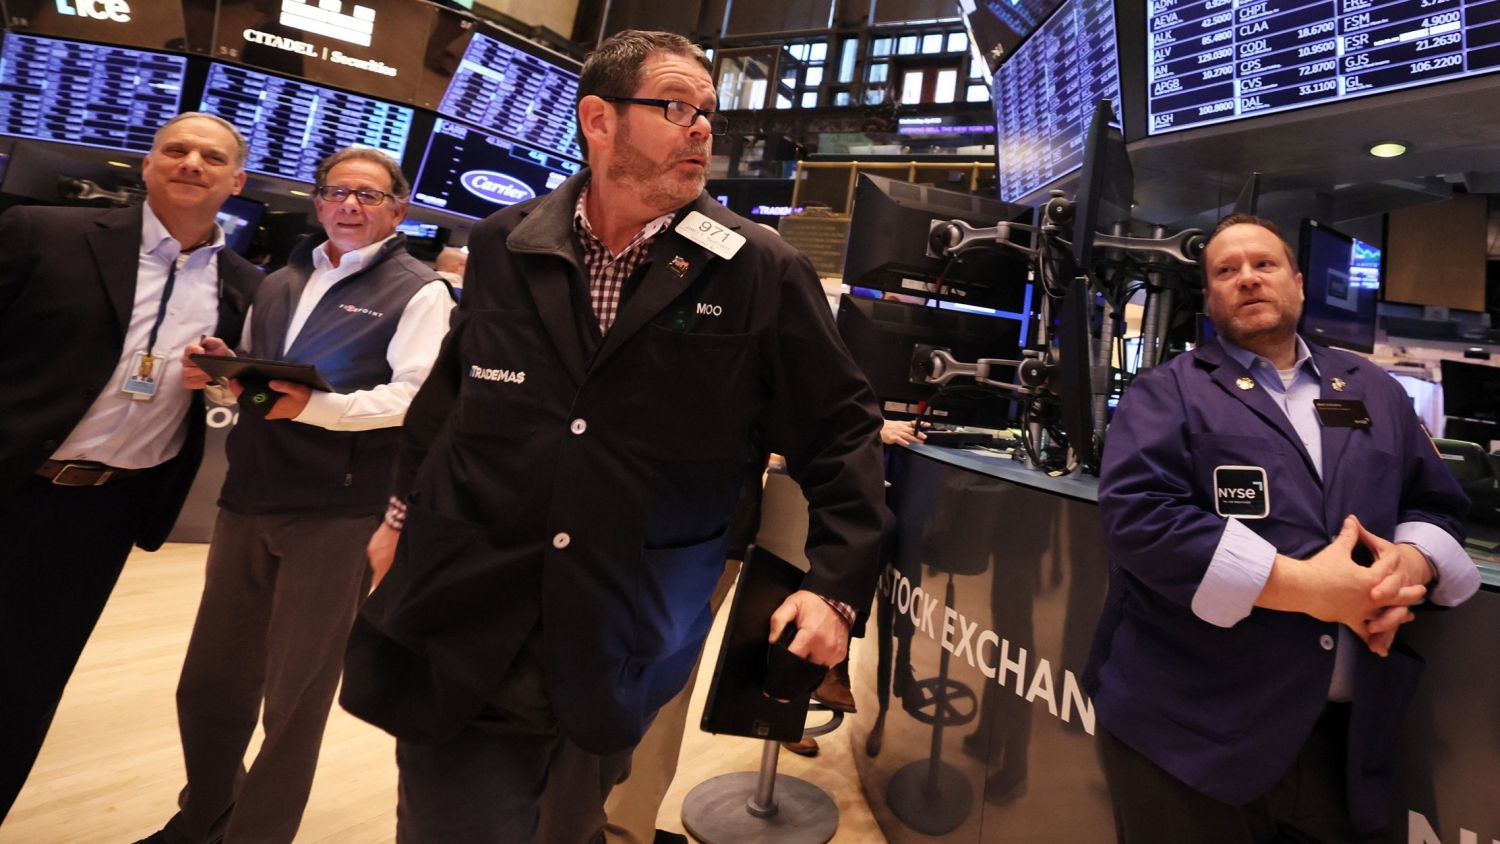 Thị trường chứng khoán thế giới ngày 27/4: Dow Jones trượt dài vì lo ngại suy thoái